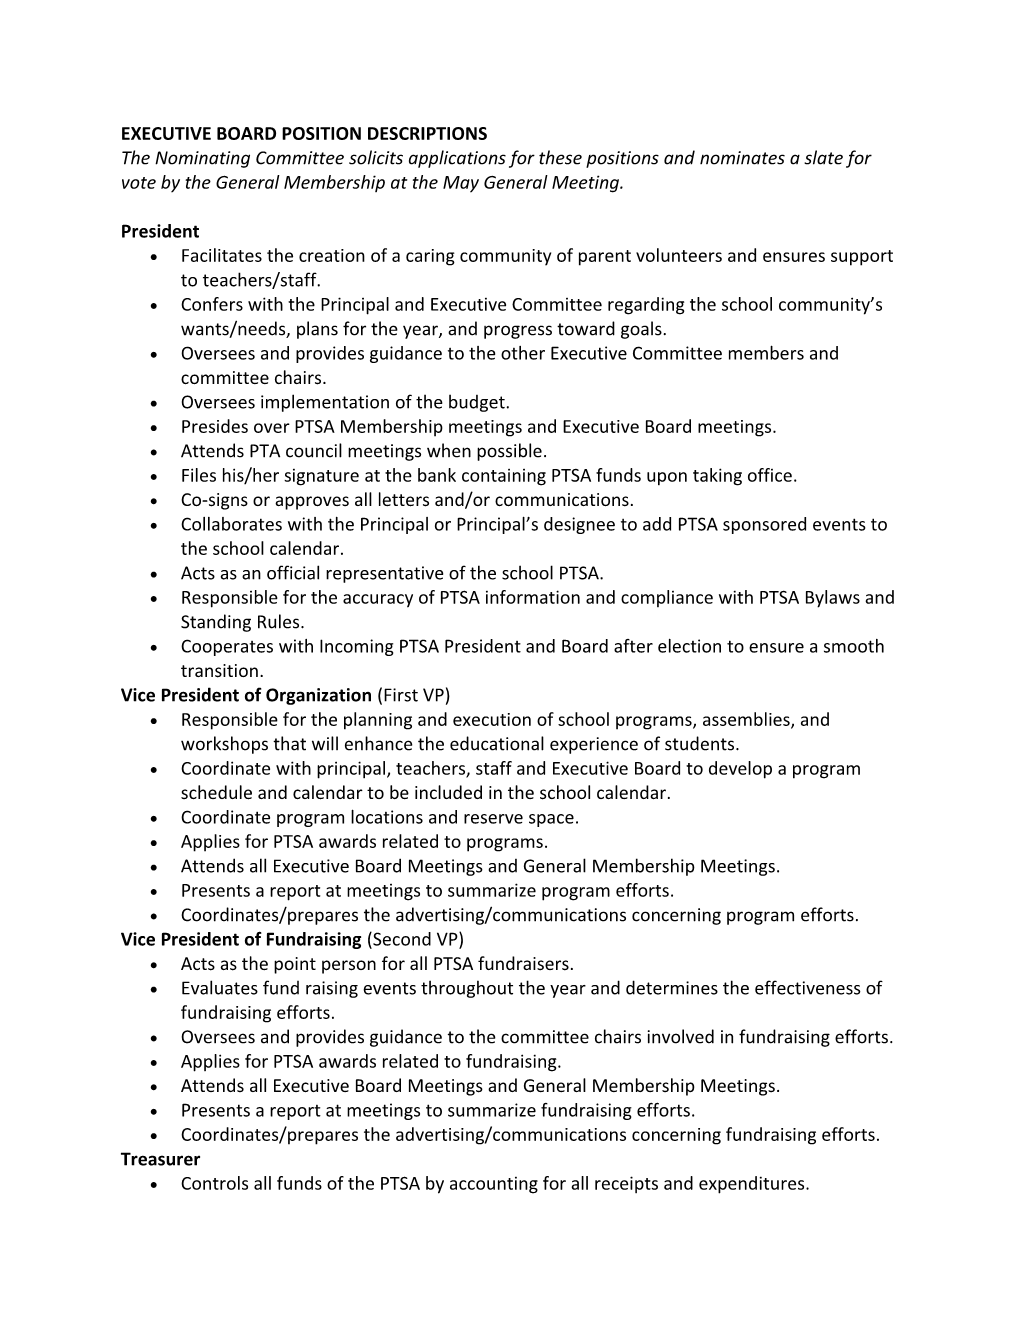 Executive Board Position Descriptions